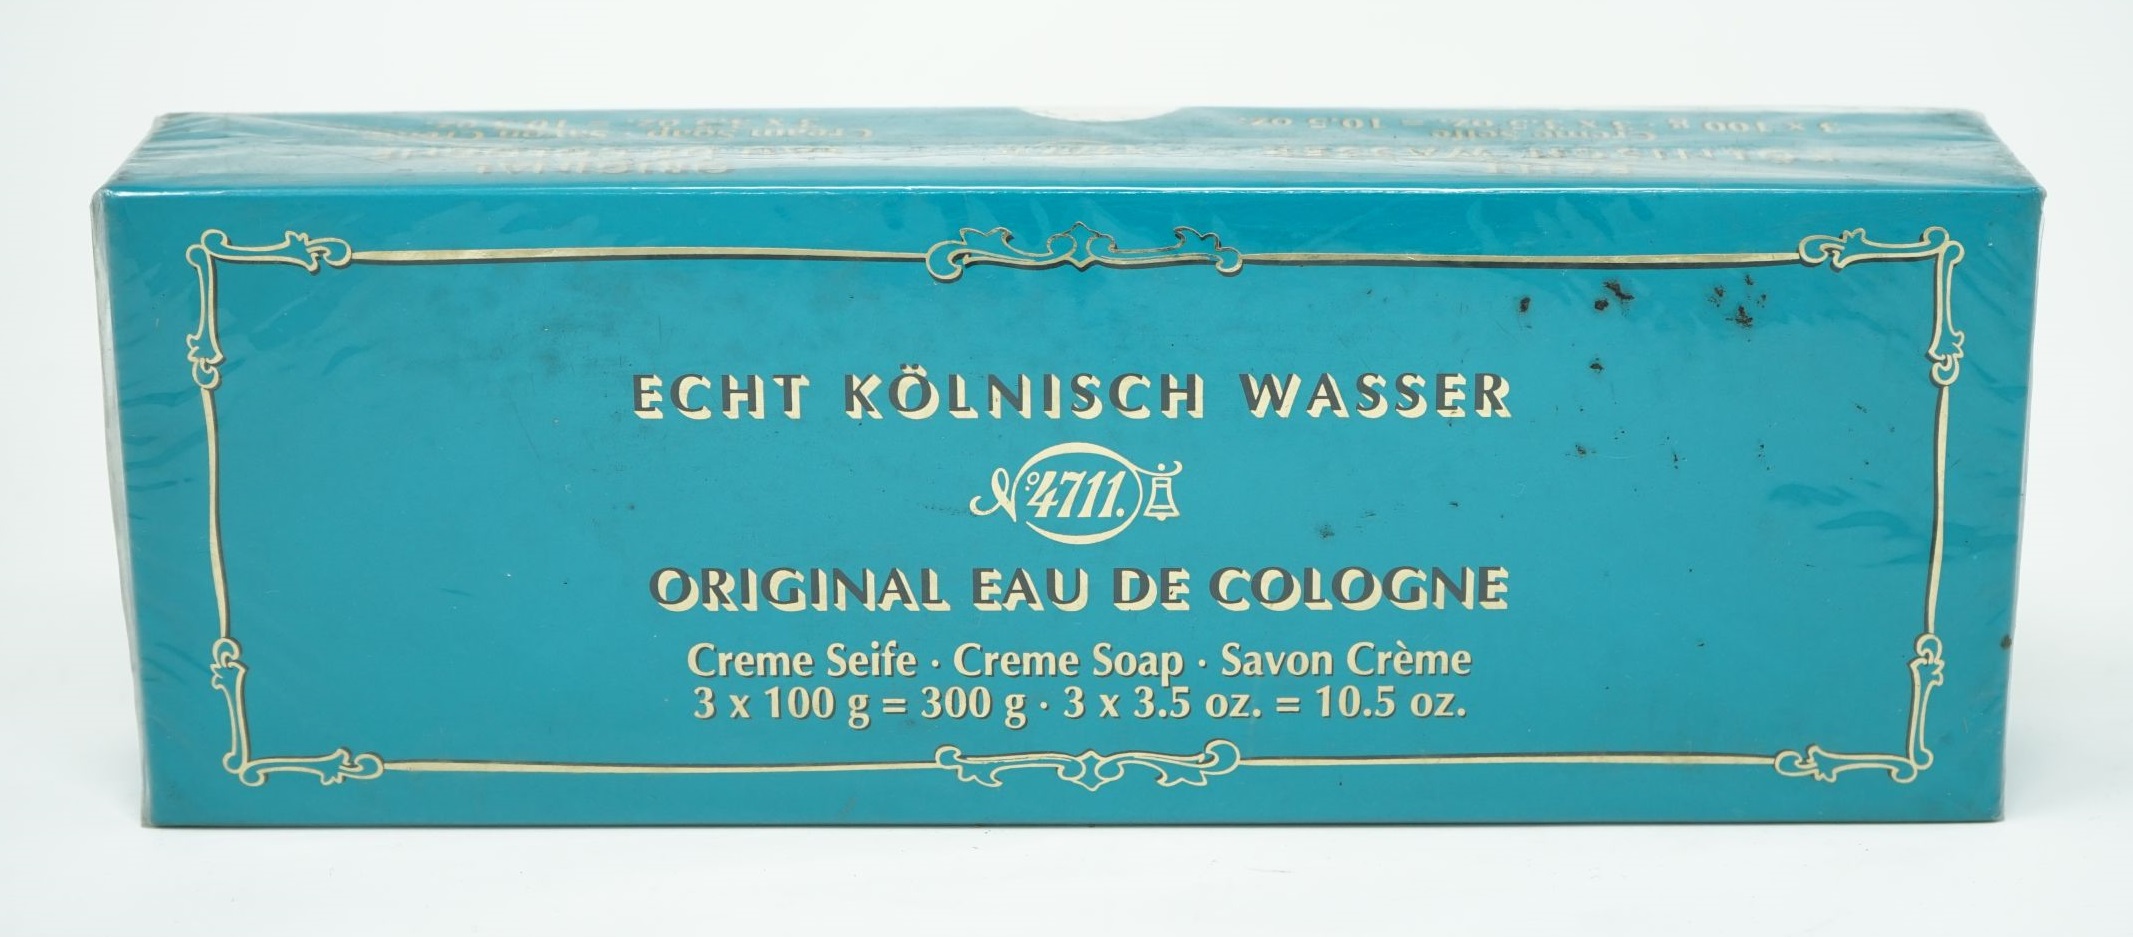 4711 Echt Kölnisch Wasser Eau de Cologne Creme Seife 3x100g